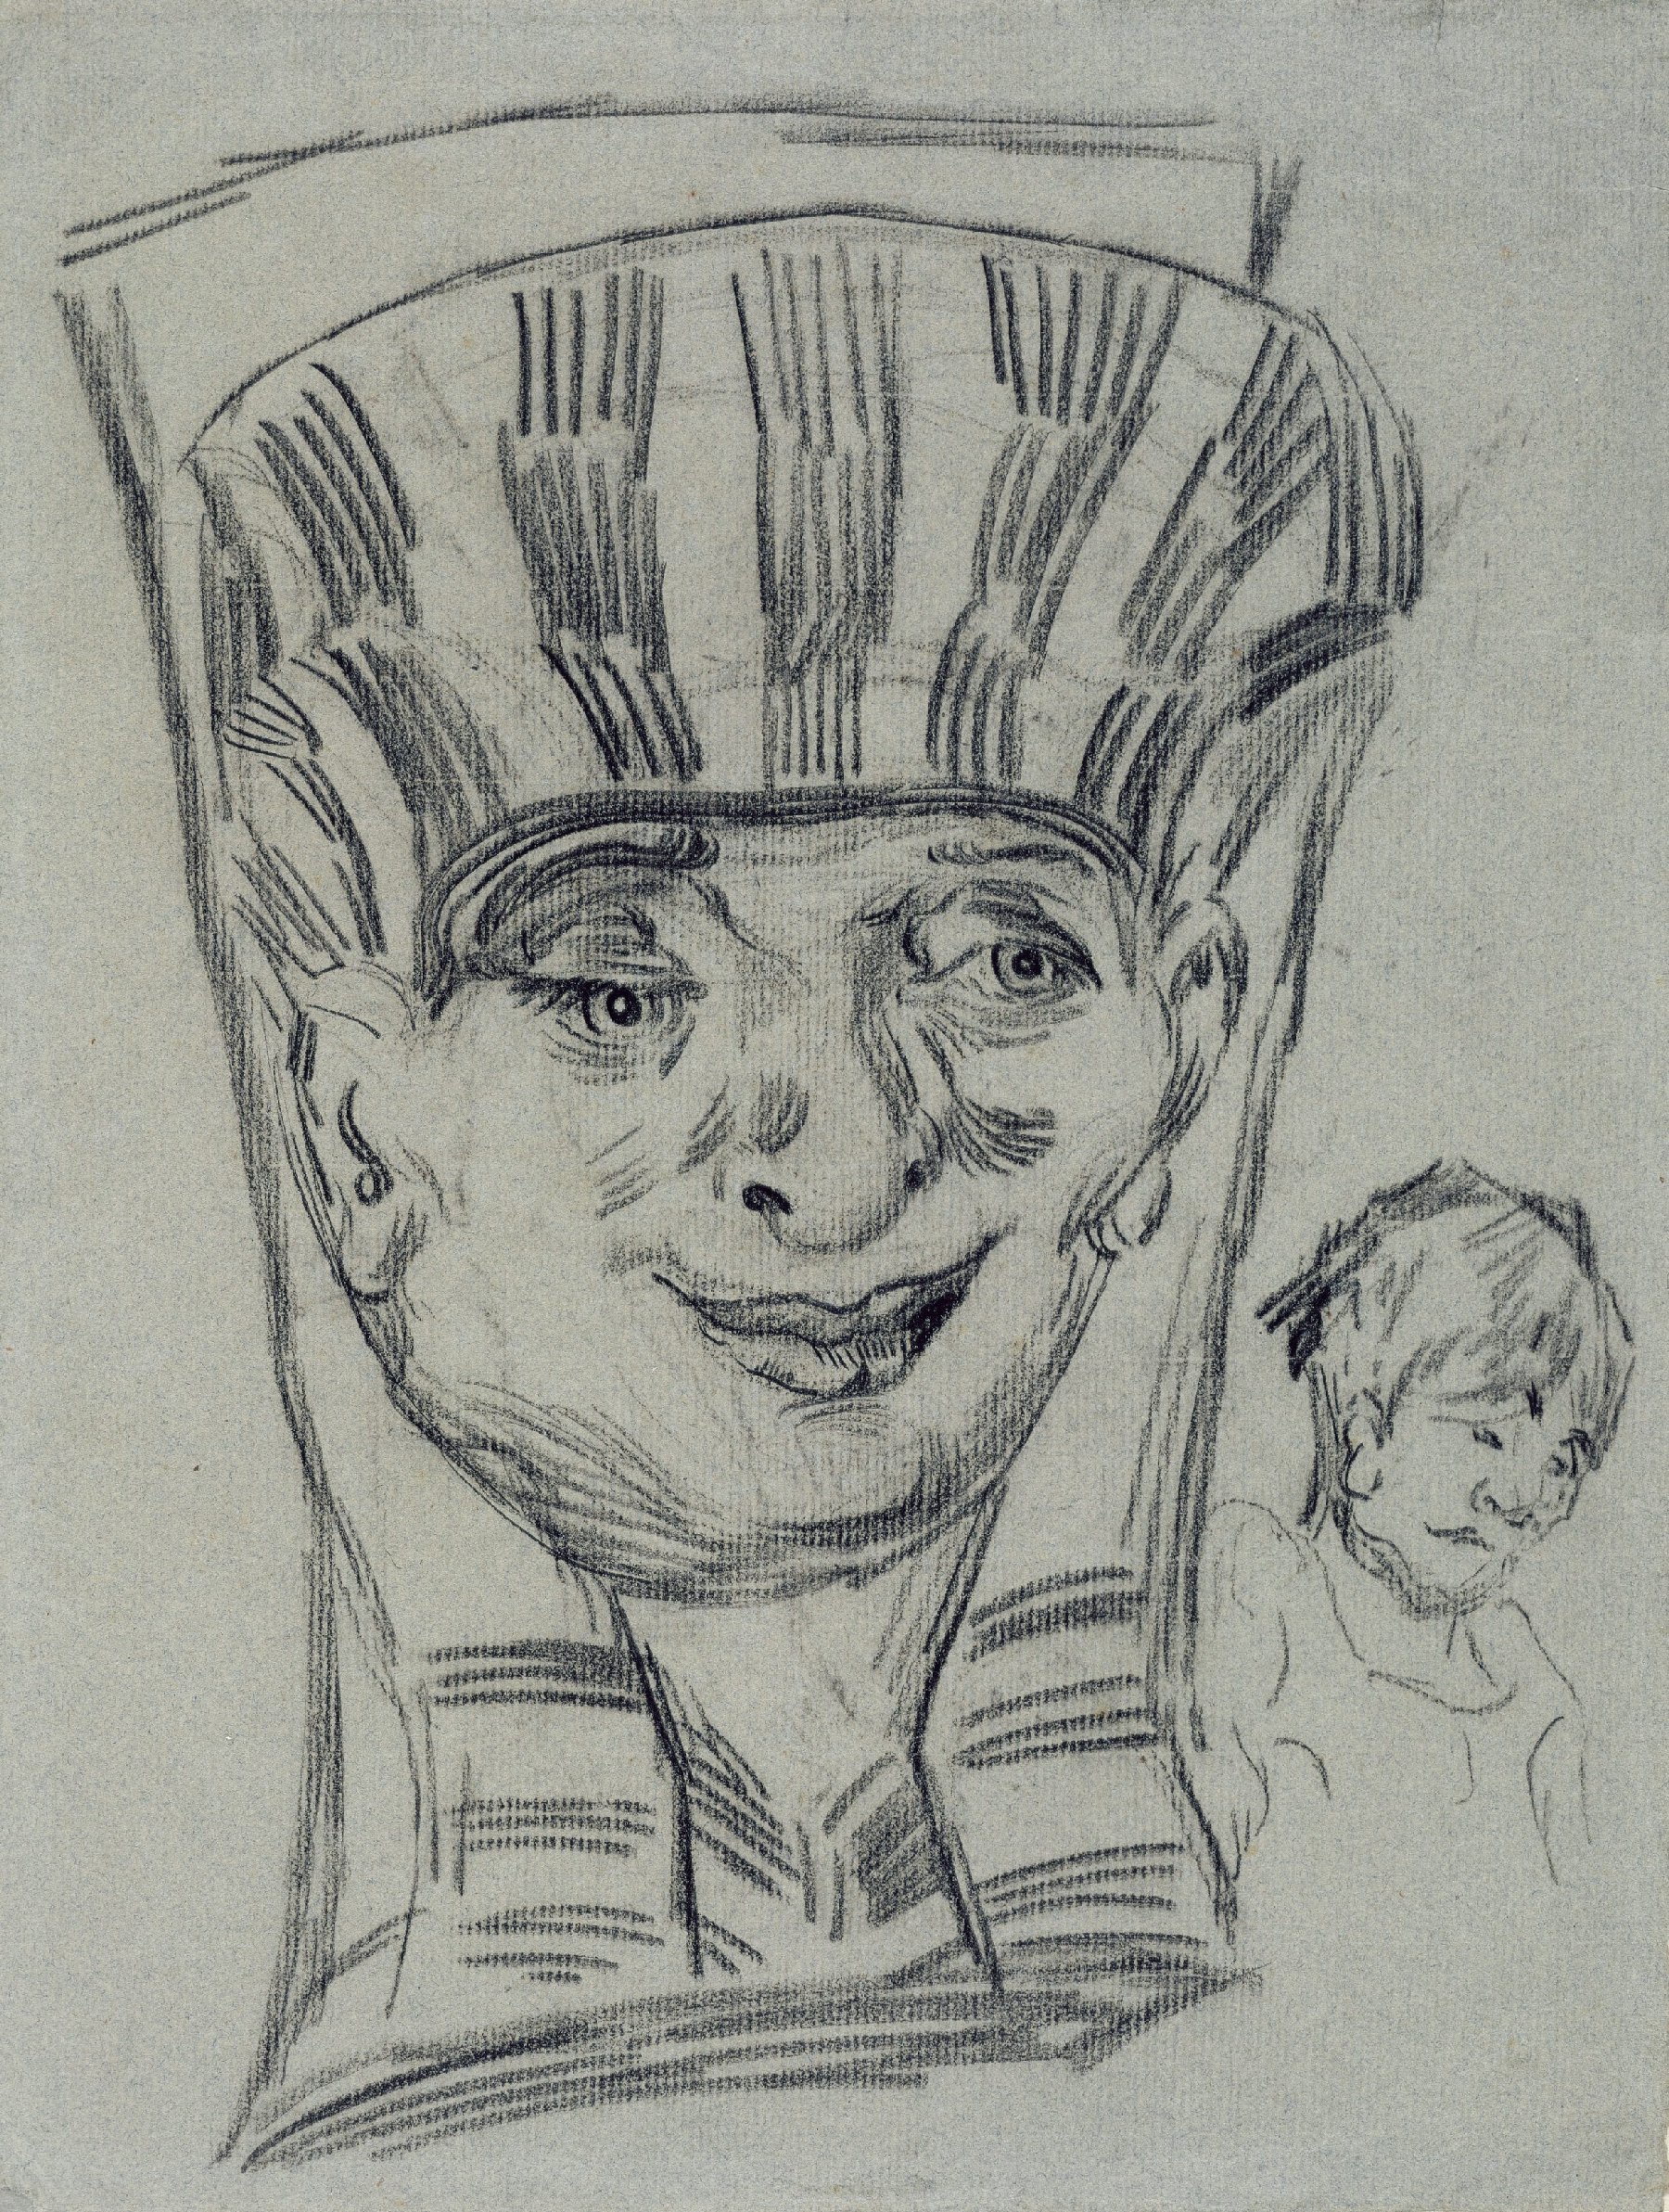 Egyptische kop en figuurstudie Vincent van Gogh (1853 - 1890), Auvers-sur-Oise, juni-juli 1890